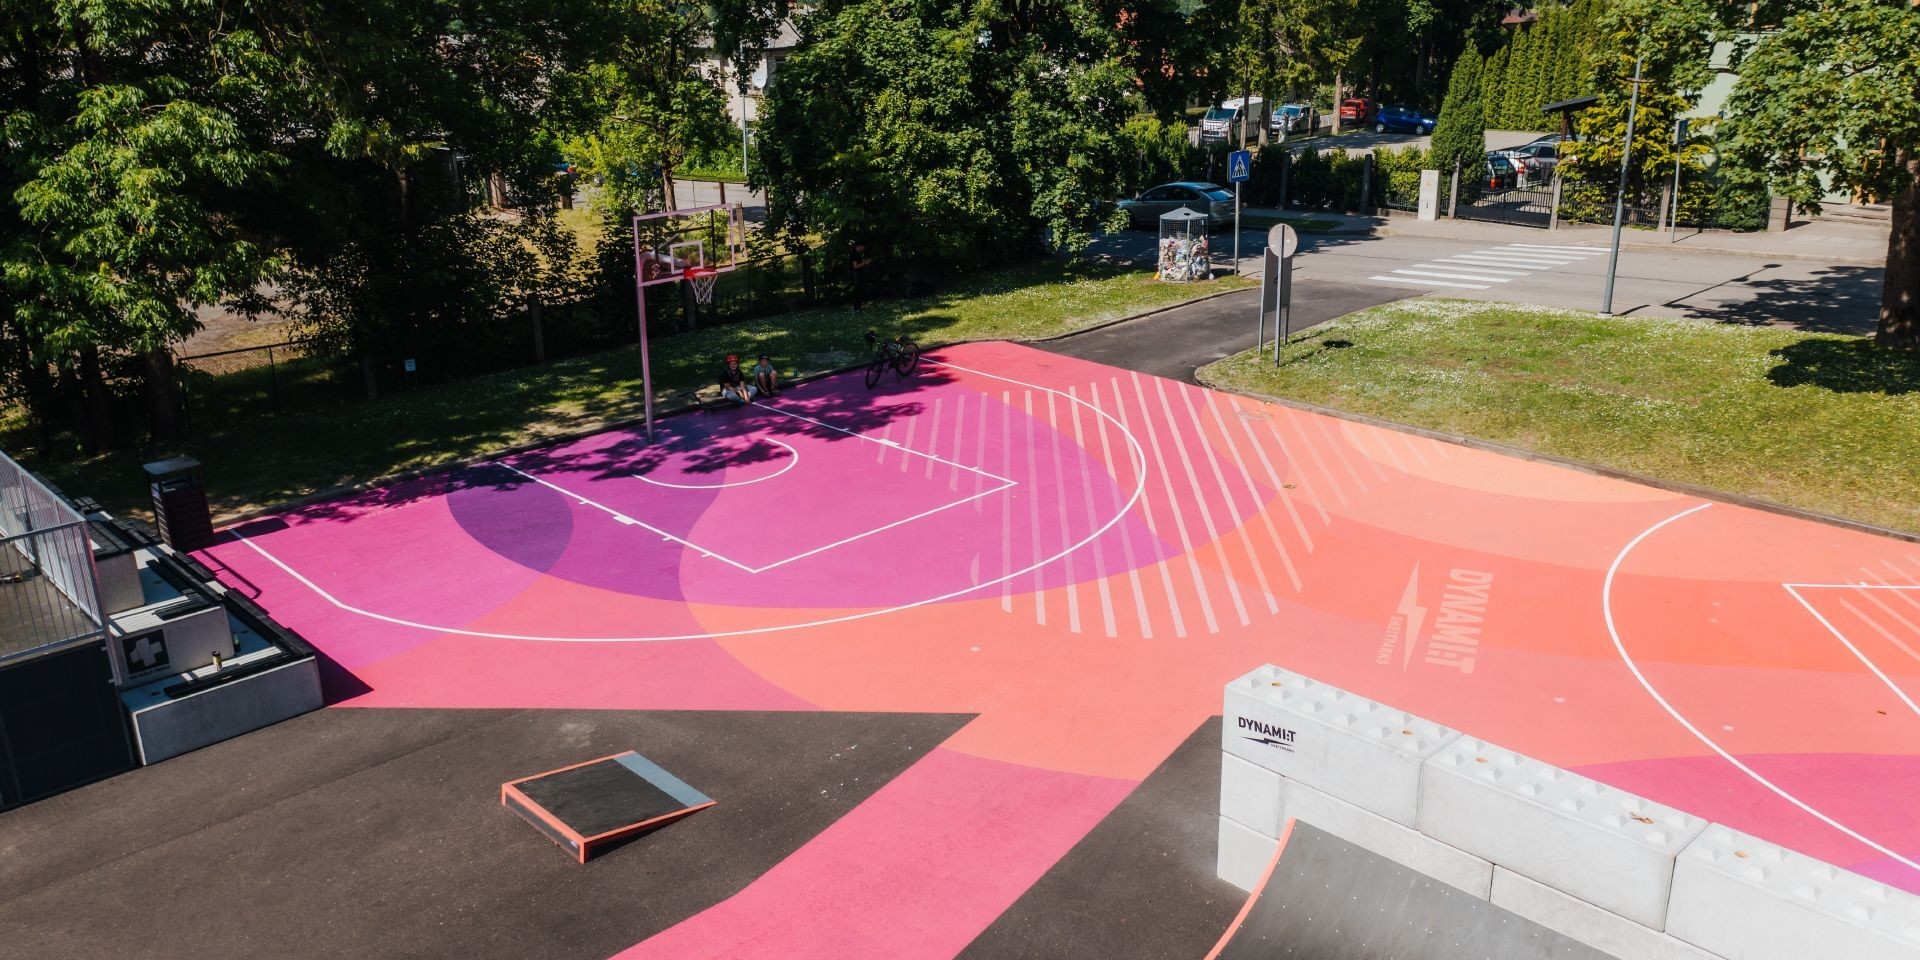 Odnowiony skatepark Cēsis przyciąga młodych ludzi swoją różowo-fioletową kolorystyką